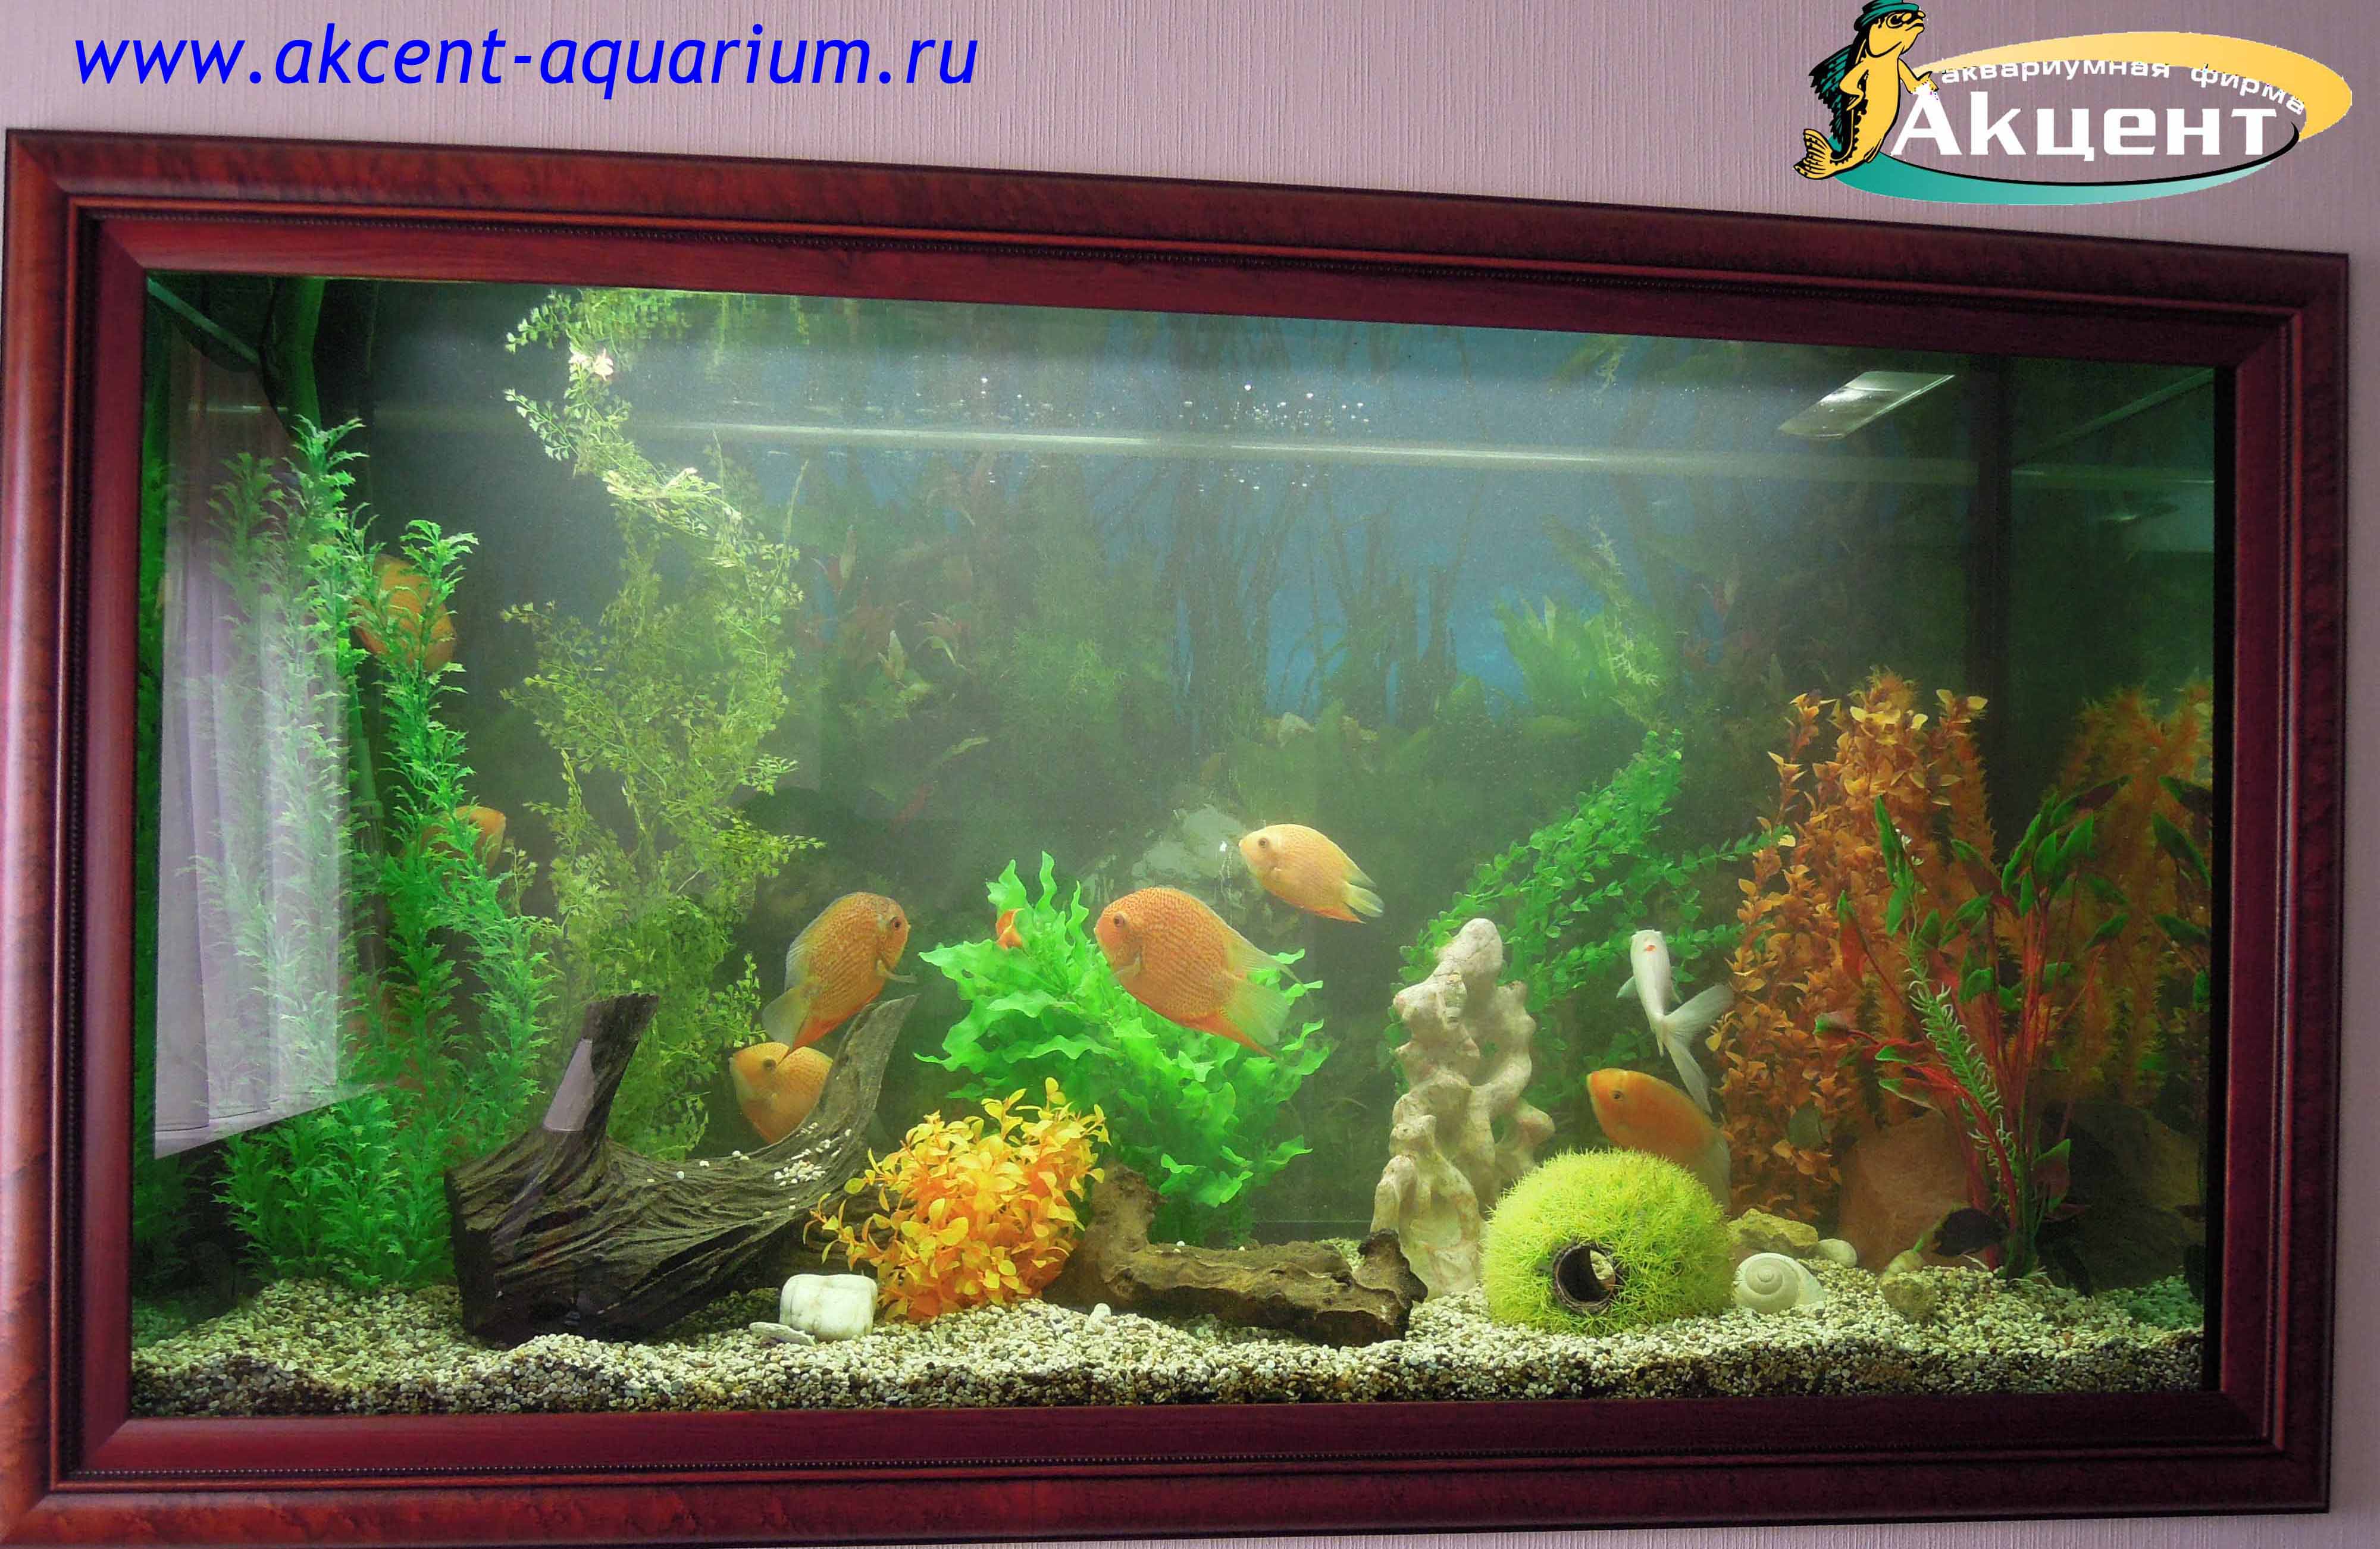 Акцент-аквариум, аквариум 800 литров цихлазома северум красный жемчуг, искусственные растения.